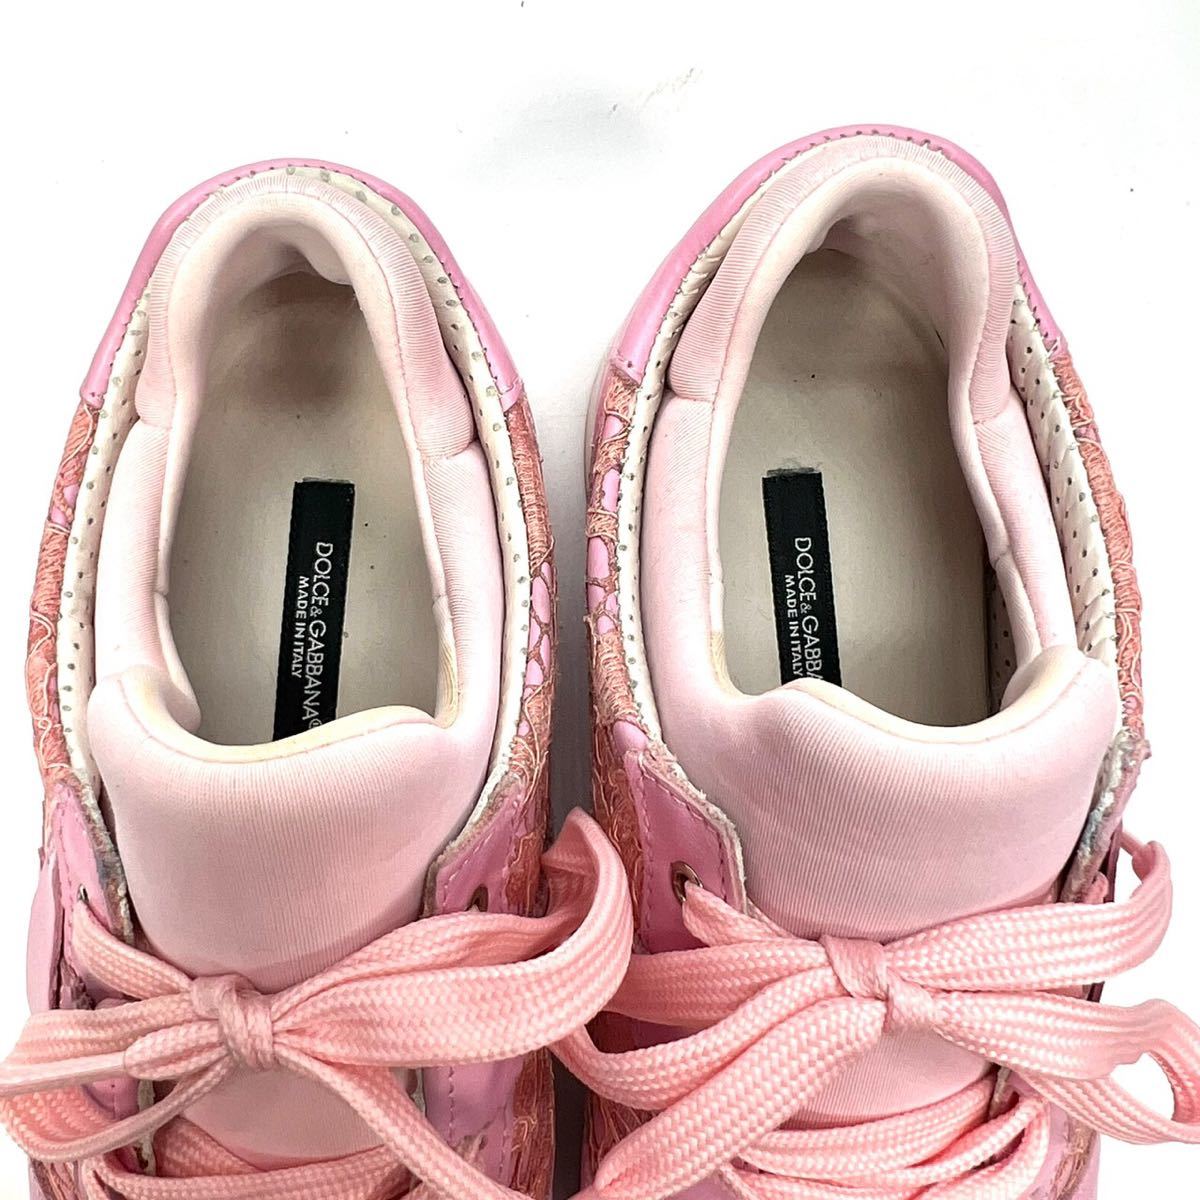 DOLCE&GABAANA Dolce and Gabbana Dolce&Gabbana sneakers pink race 36 23cm lady's shoes shoes 